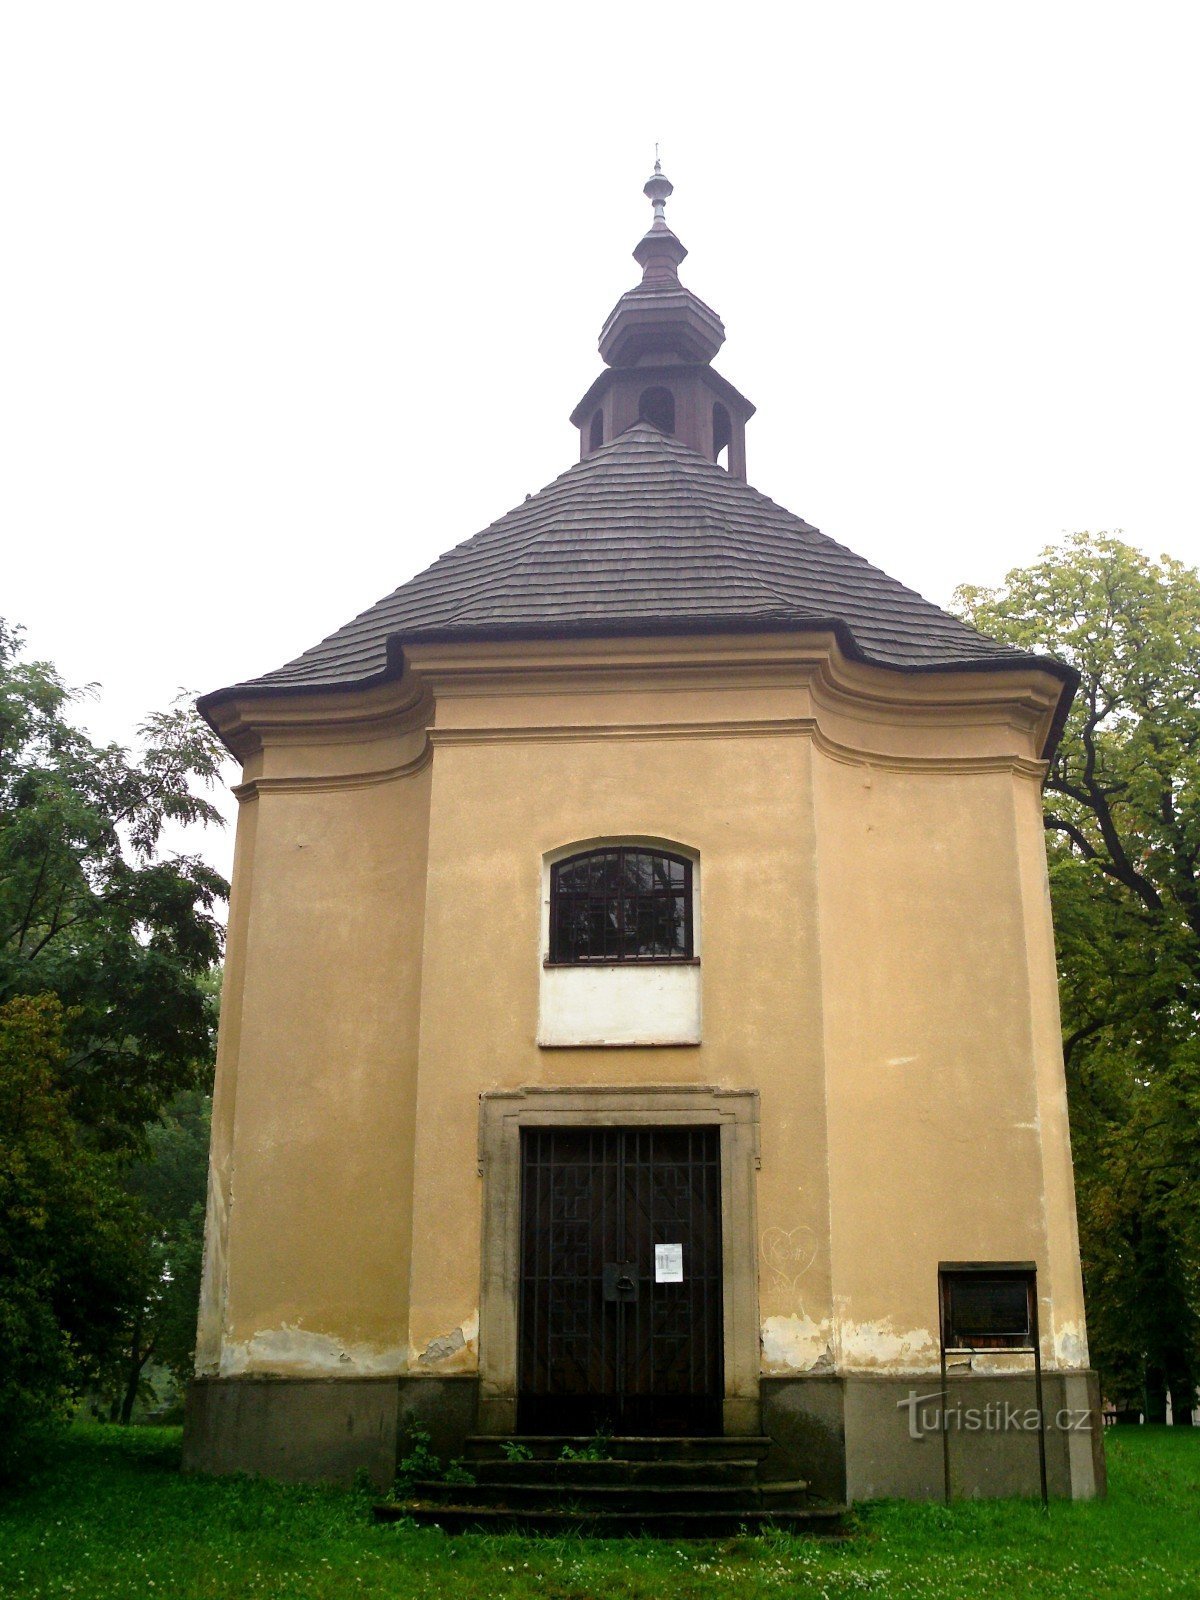 Bystřice pod Hostýnem - Pyhän Nikolauksen kappeli. Lawrence